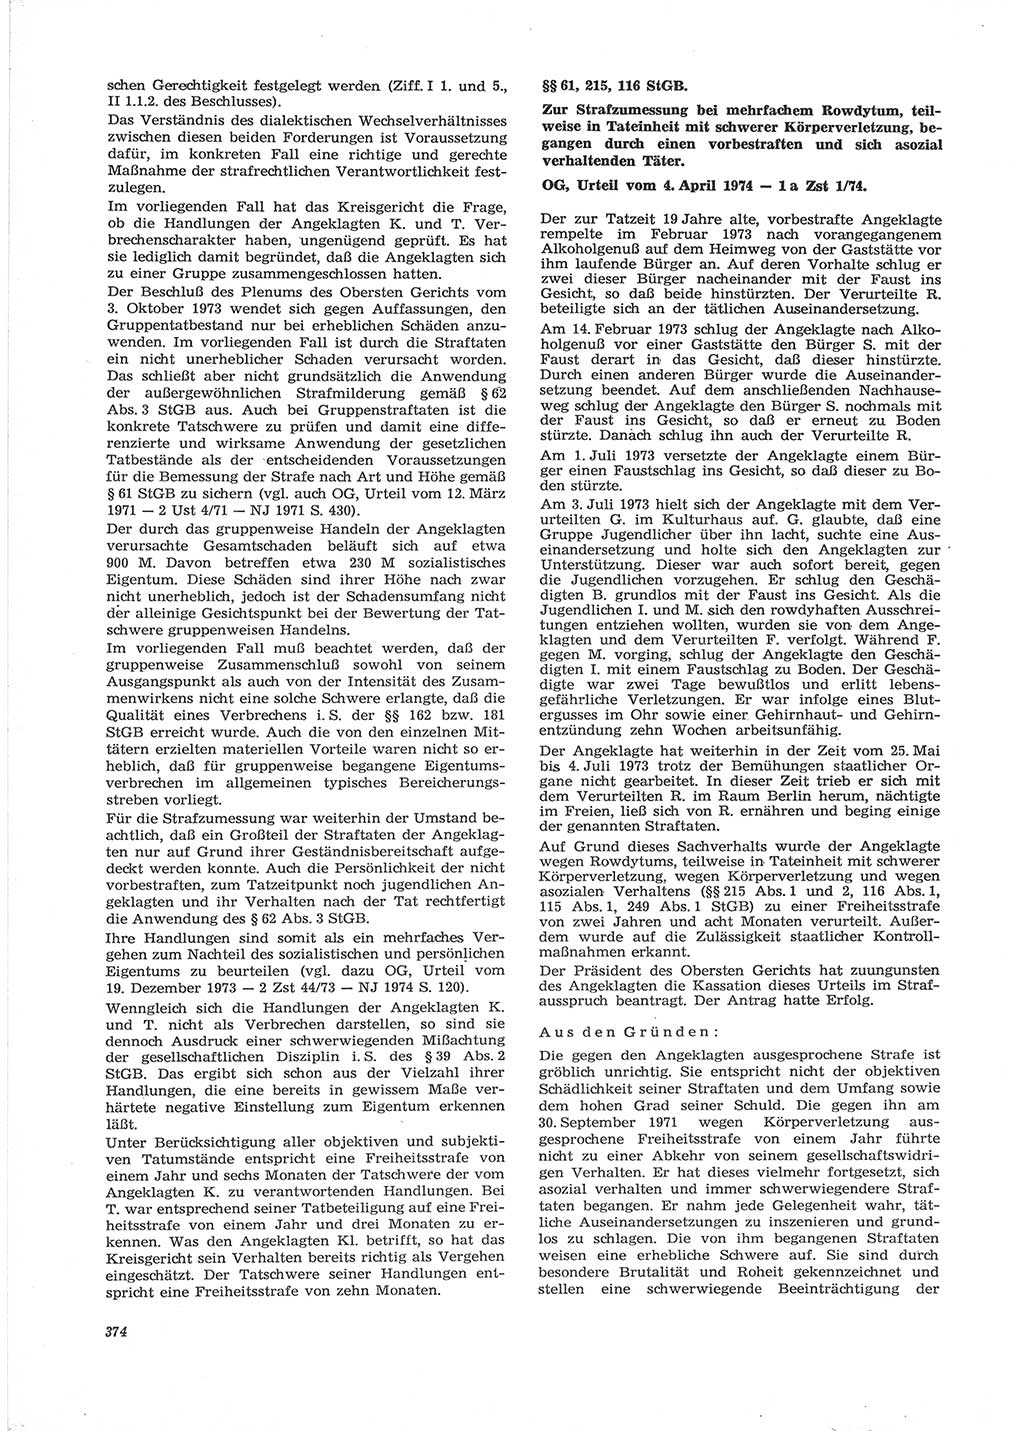 Neue Justiz (NJ), Zeitschrift für Recht und Rechtswissenschaft [Deutsche Demokratische Republik (DDR)], 28. Jahrgang 1974, Seite 374 (NJ DDR 1974, S. 374)